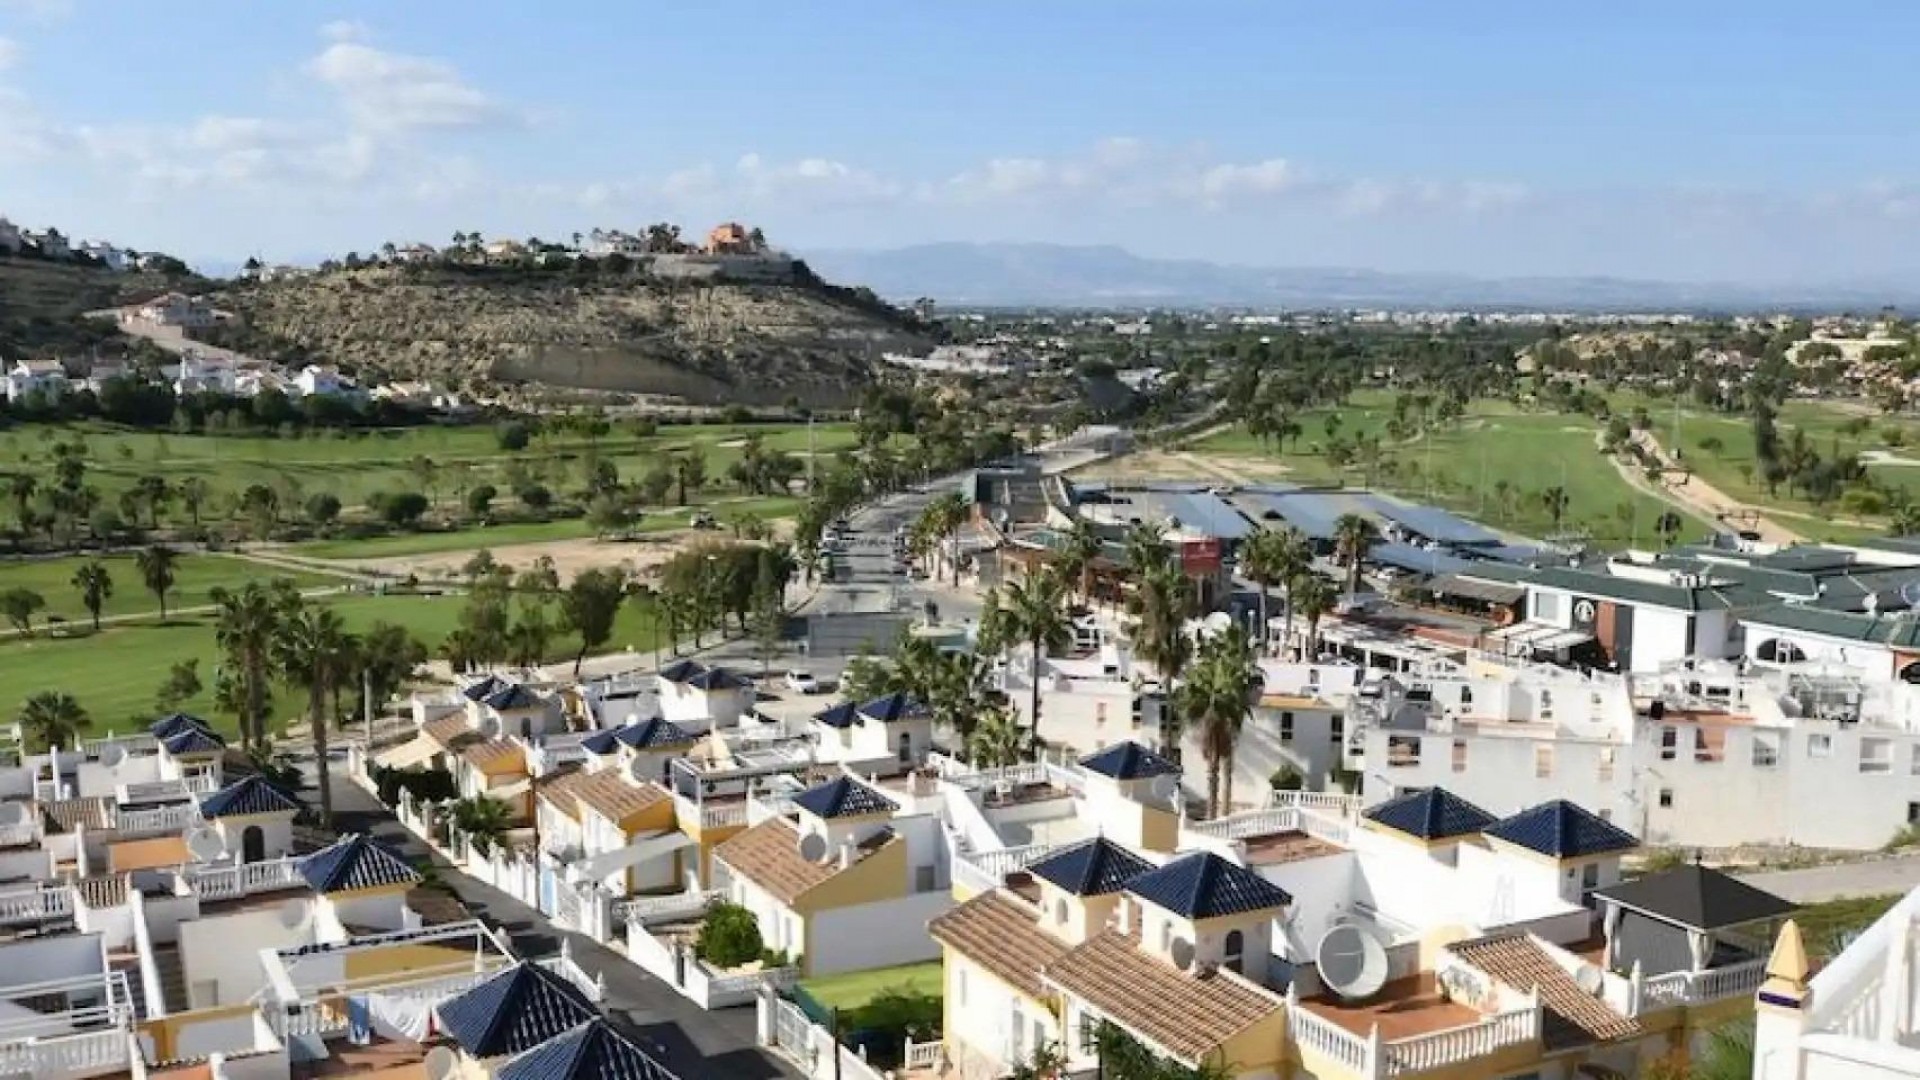 Luksus-villa i Ciudad Quesada med 3 soverom og 3 bad på et plan, basseng, hage og stort solarium og parkeringsplass. Nær golfbaner